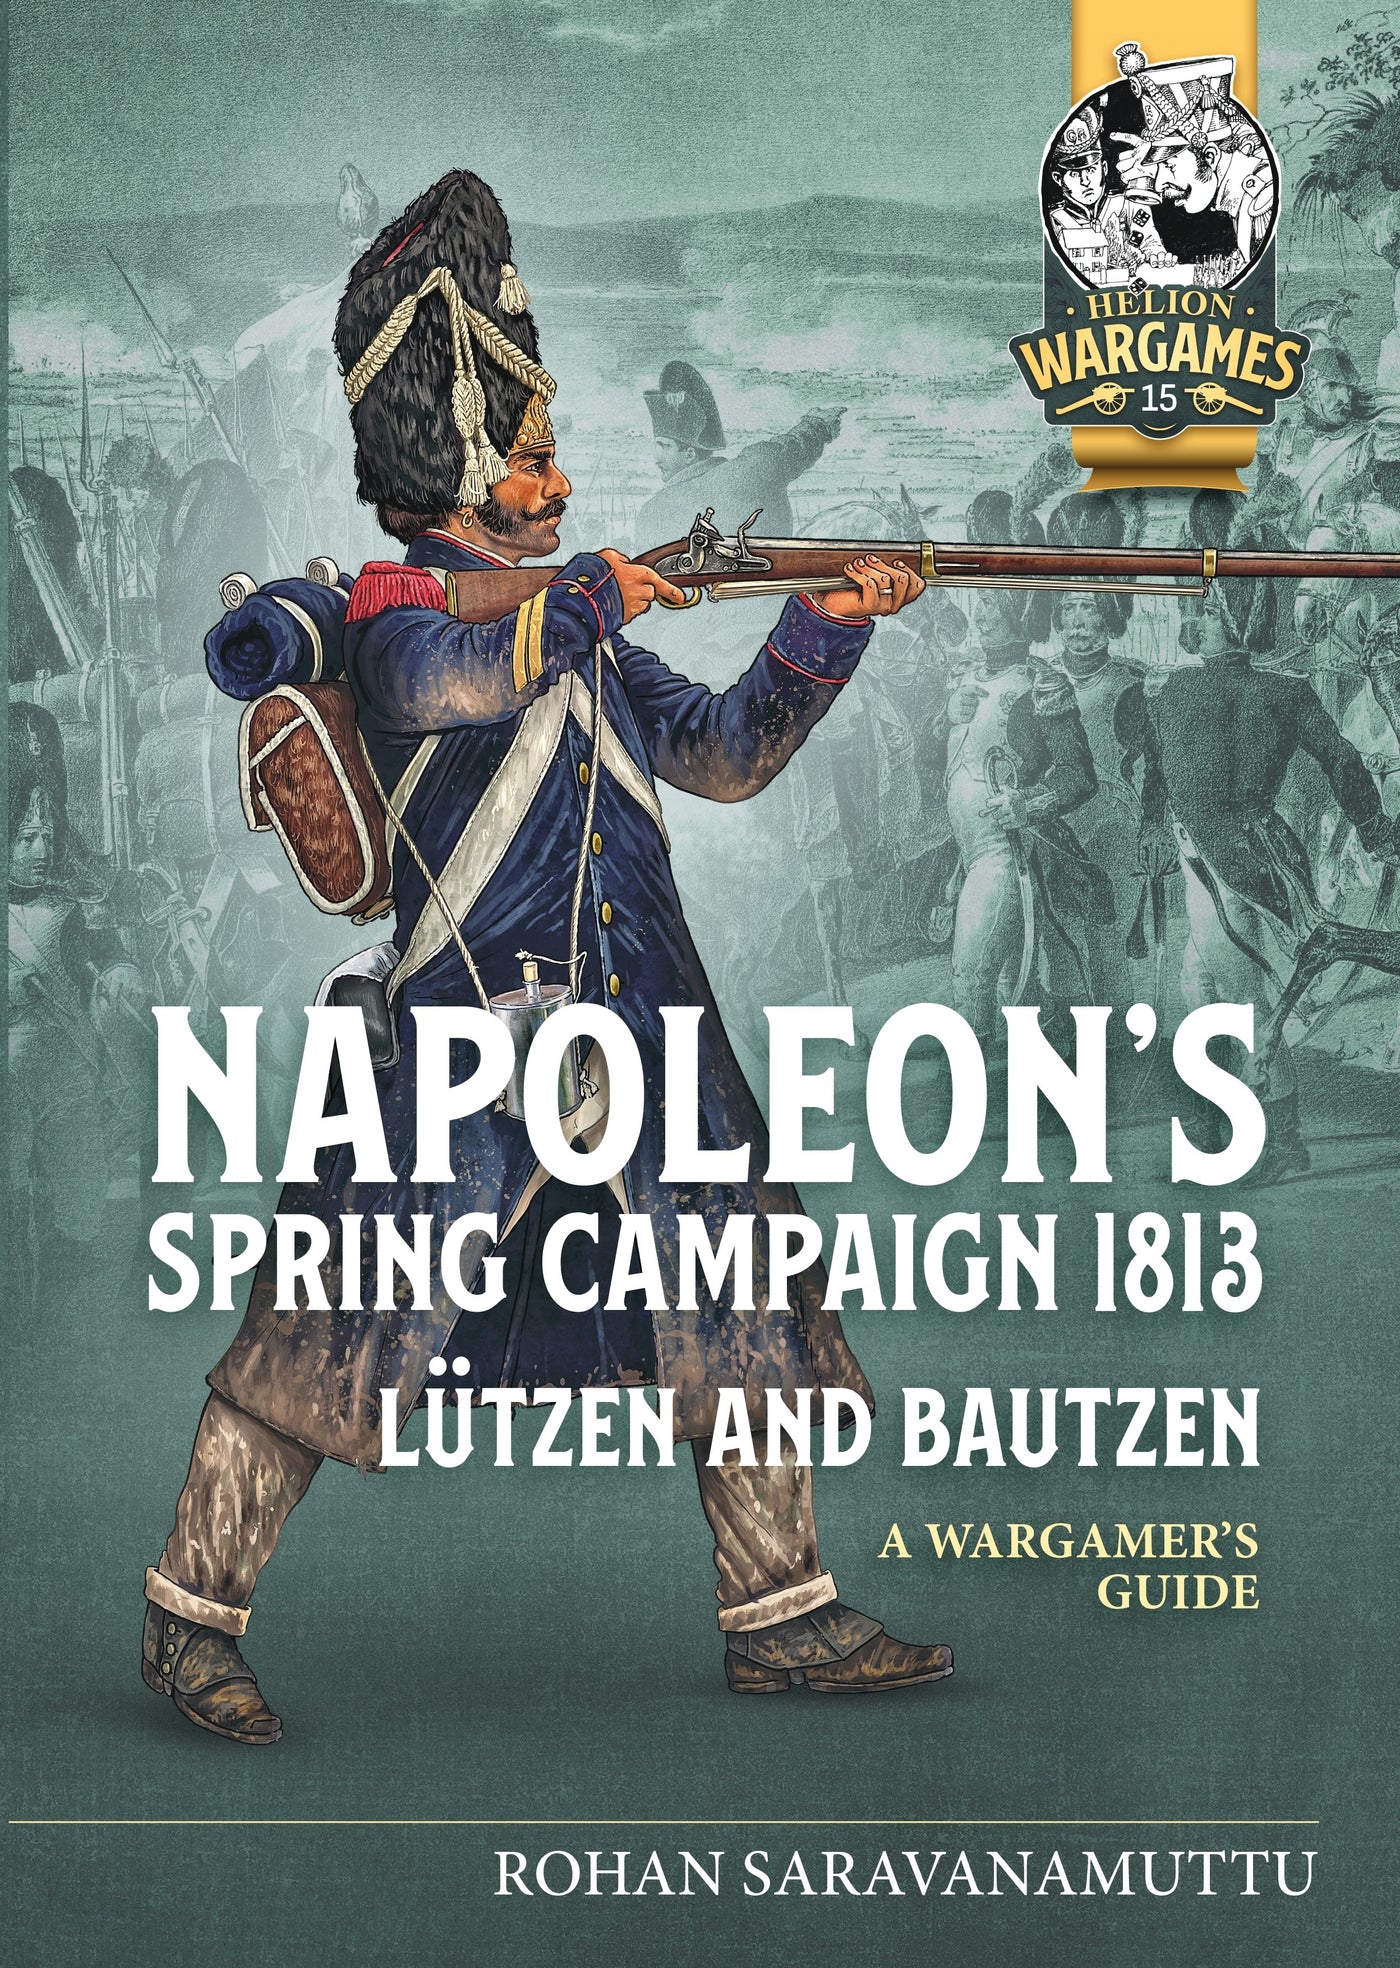 Napoleon's Spring Campaign 1813